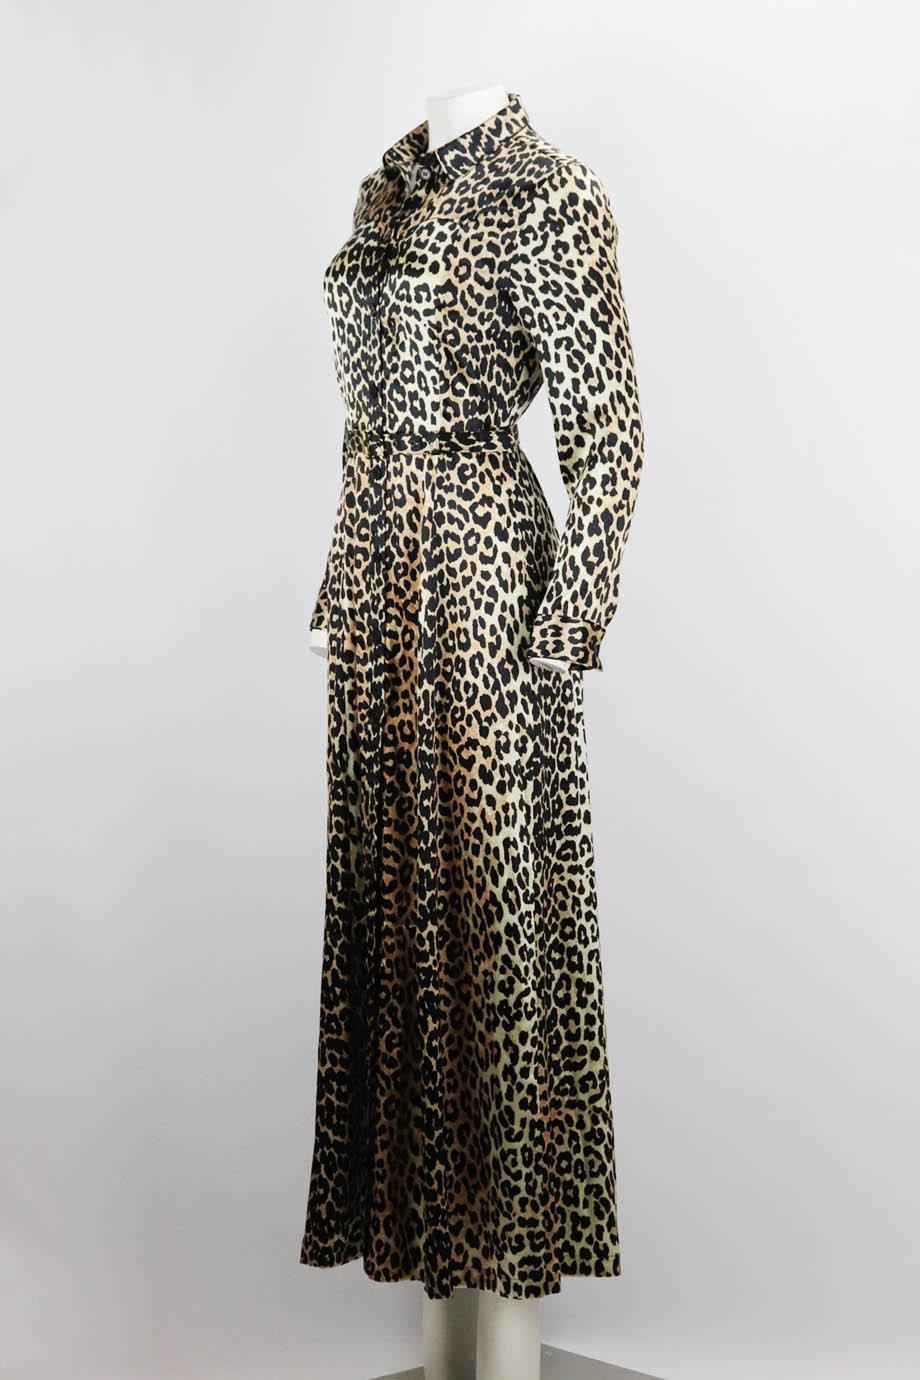 ganni leopard dress